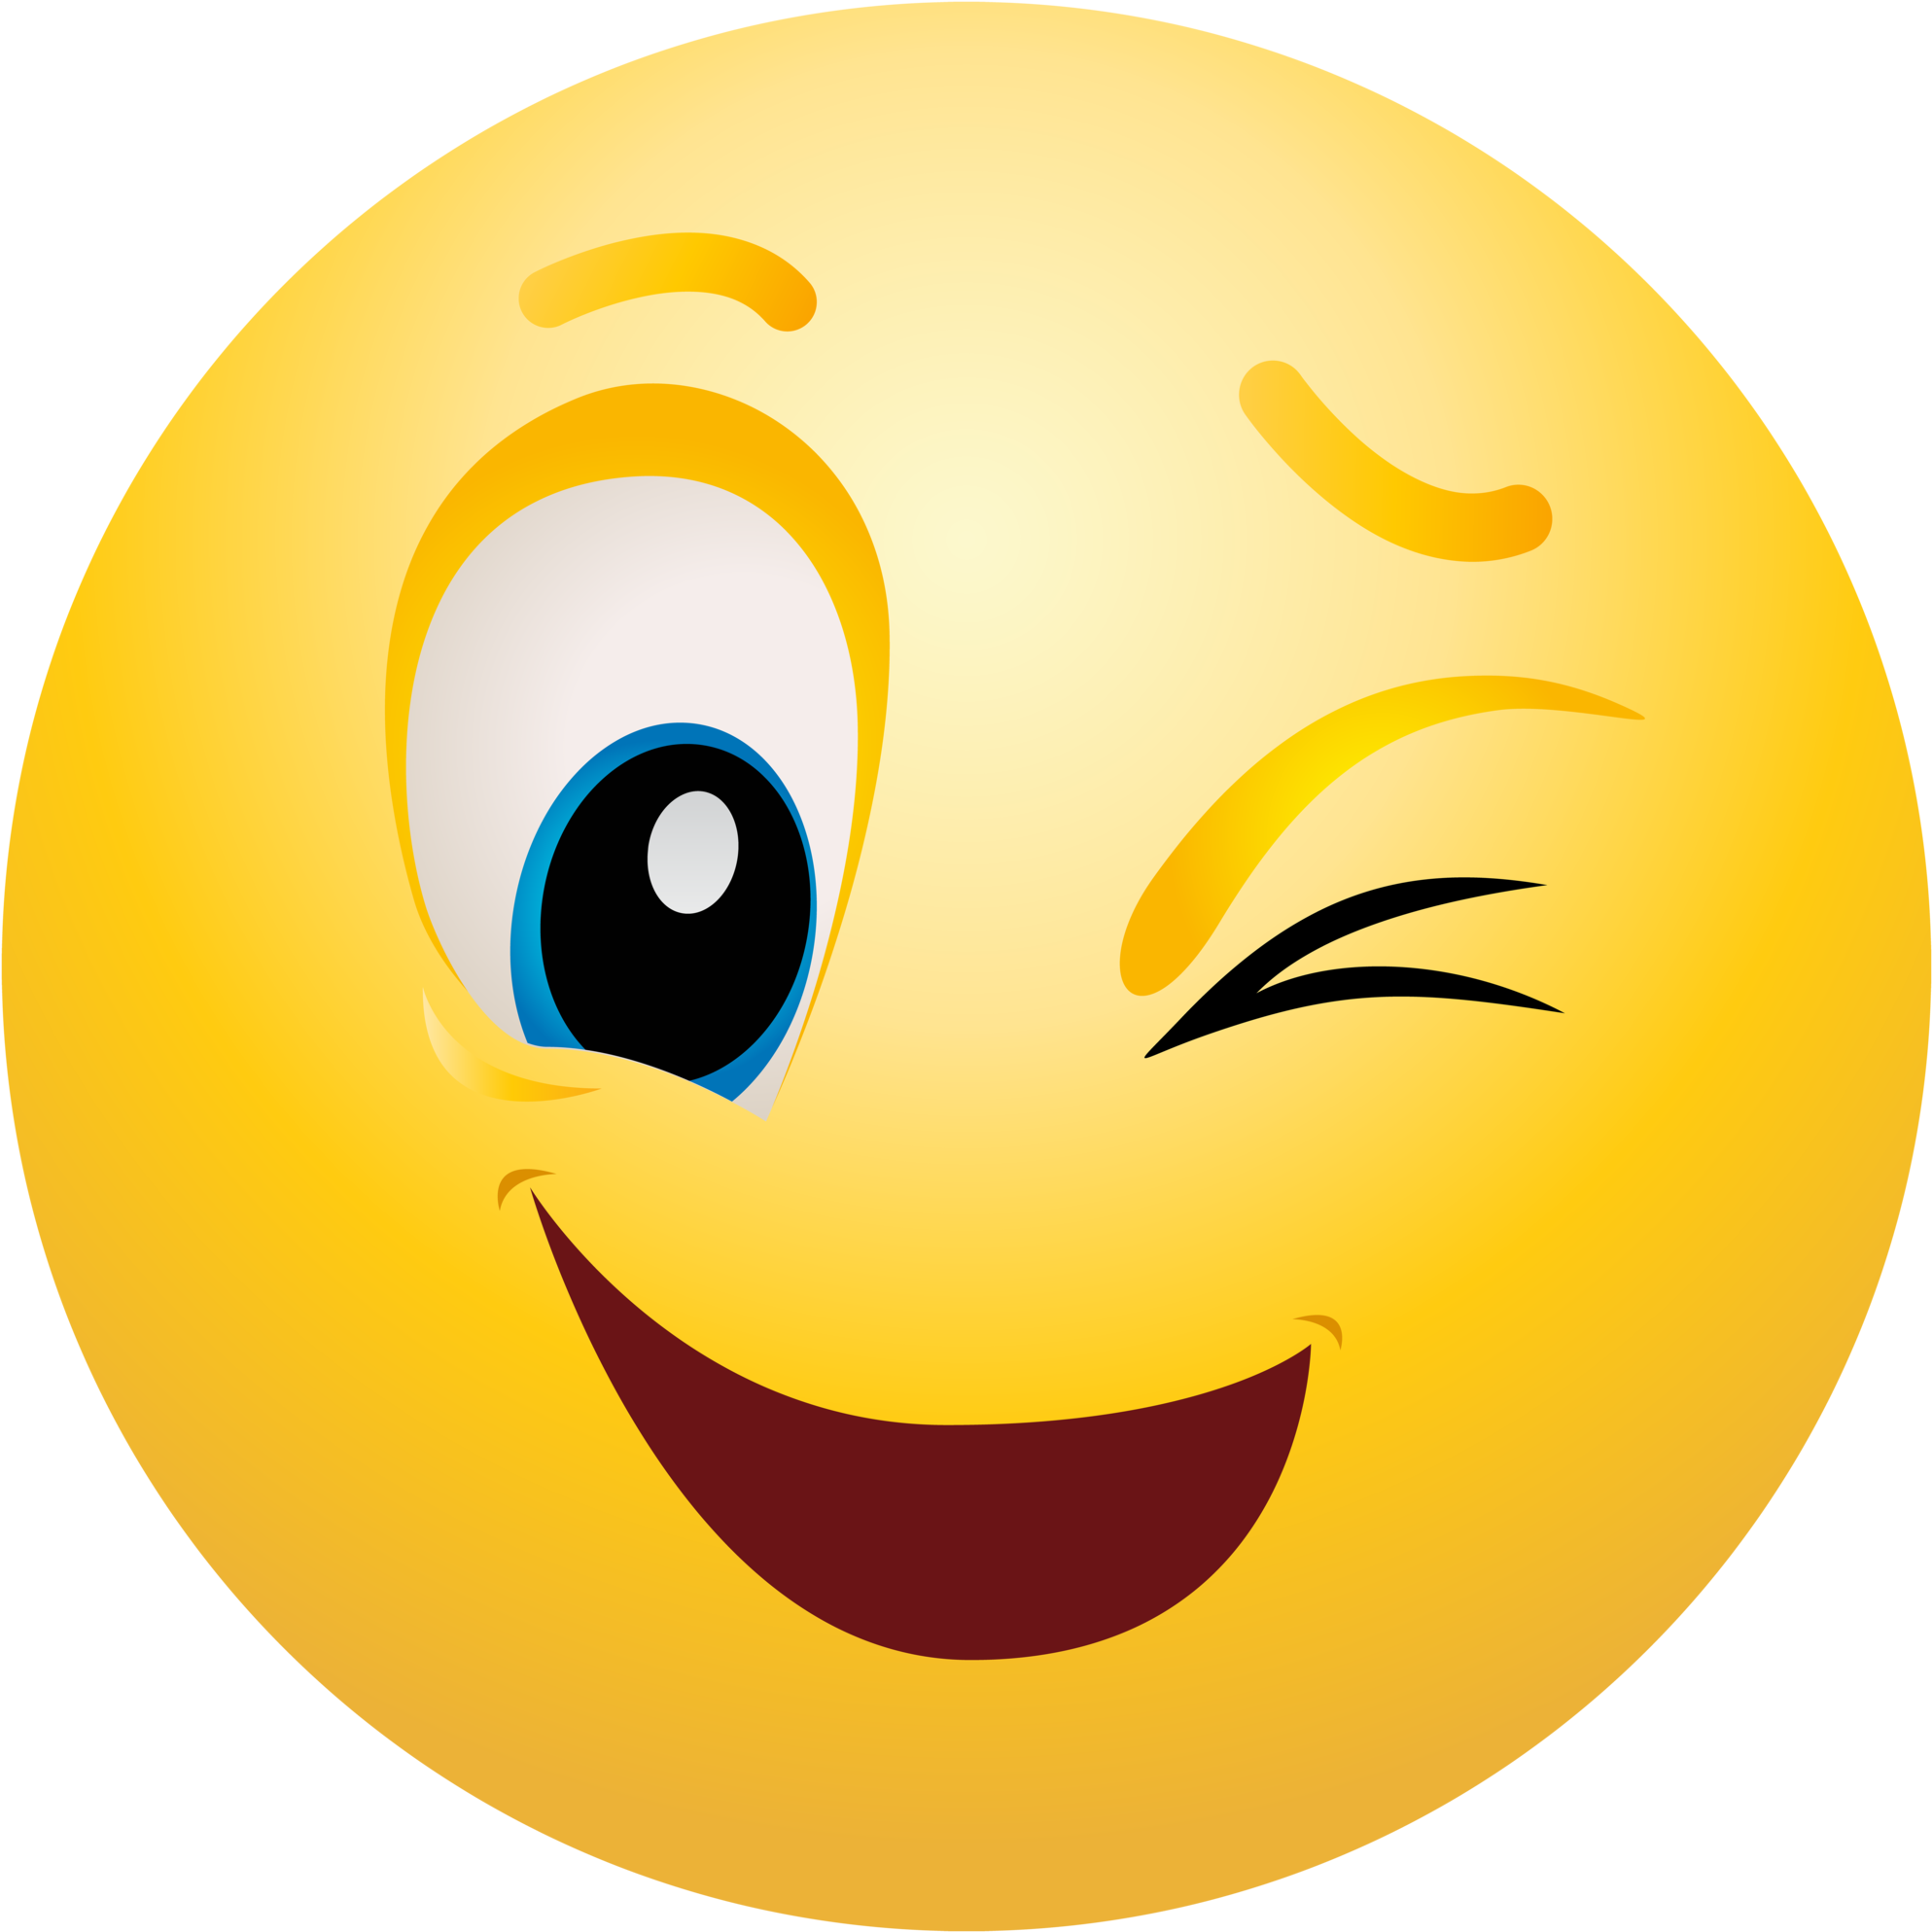 Emoji Png Smile Emoji Face Png Image Background Png Arts Check